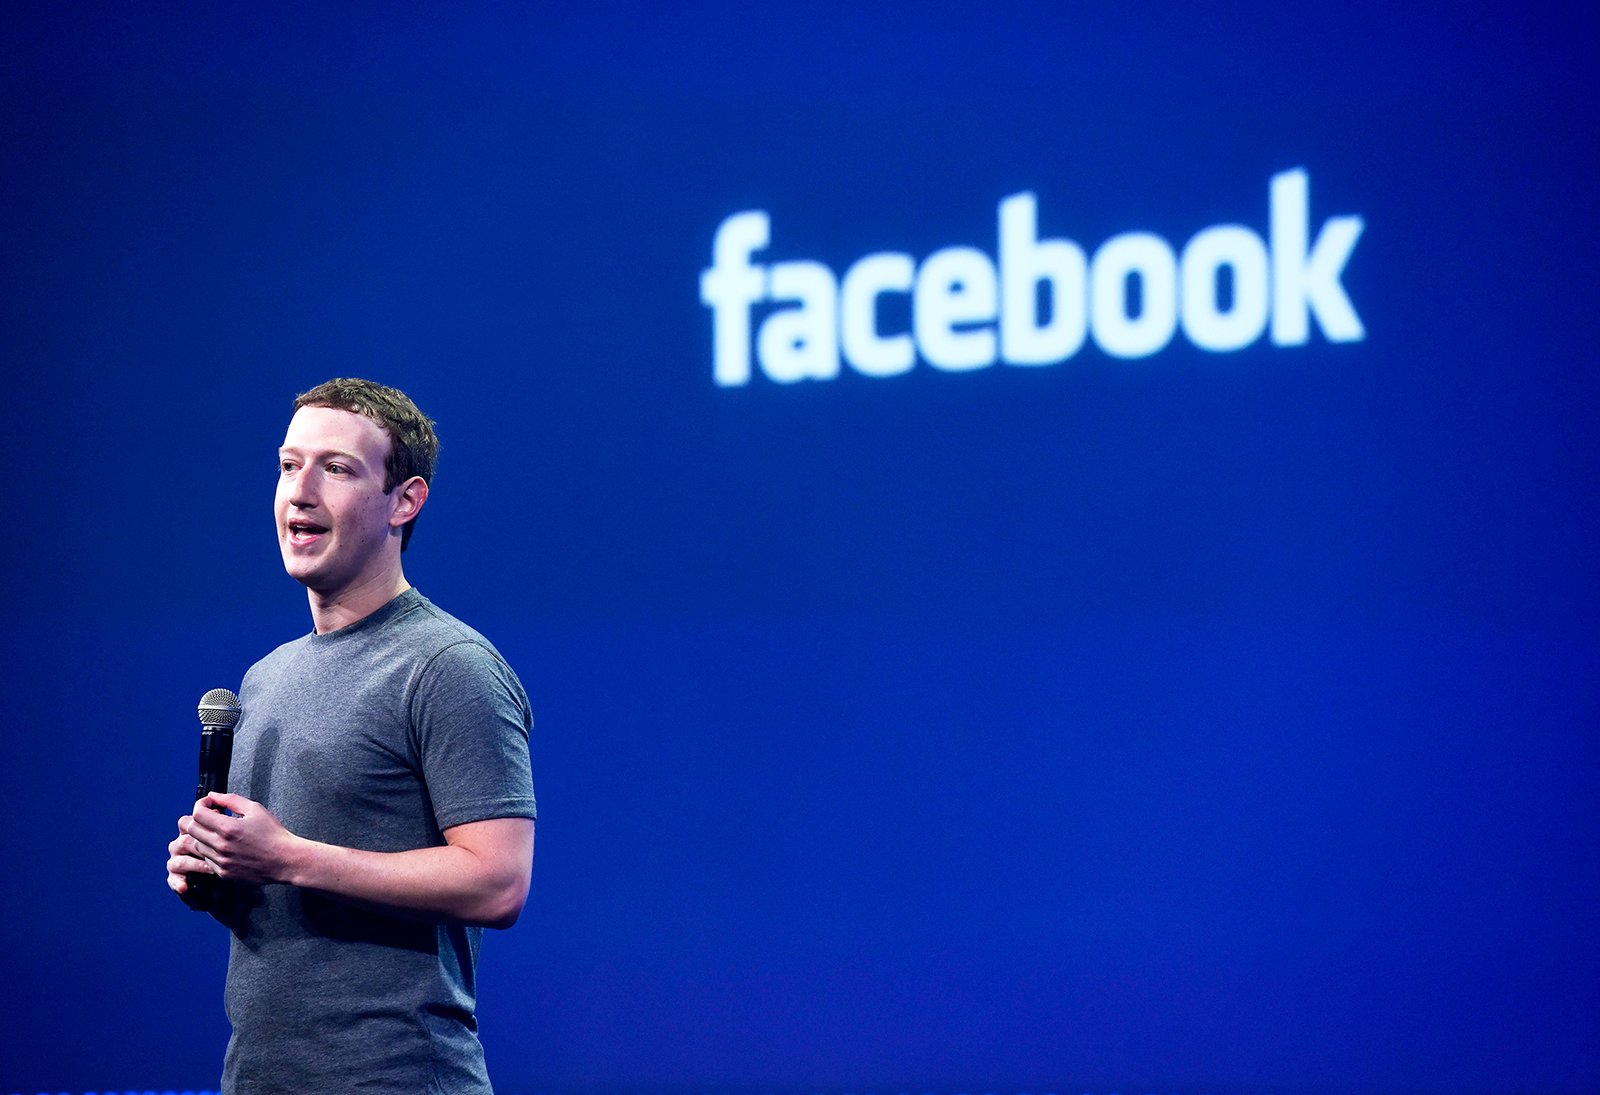 Mark Zuckerberg, glavni izvršni direktor družbe Facebook Inc., govori na konferenci za razvijalce Facebook F8 v San Franciscu, Kalifornija, ZDA, v sredo, 25. marca 2015. Zuckerberg namerava razkriti orodja, ki bodo ustvarjalcem aplikacij omogočila, da dosežejo občinstvo družbenega omrežja, hkrati pa pomaga podjetje poveča prihodke. Fotograf: David Paul Morris/Bloomberg preko Getty Images